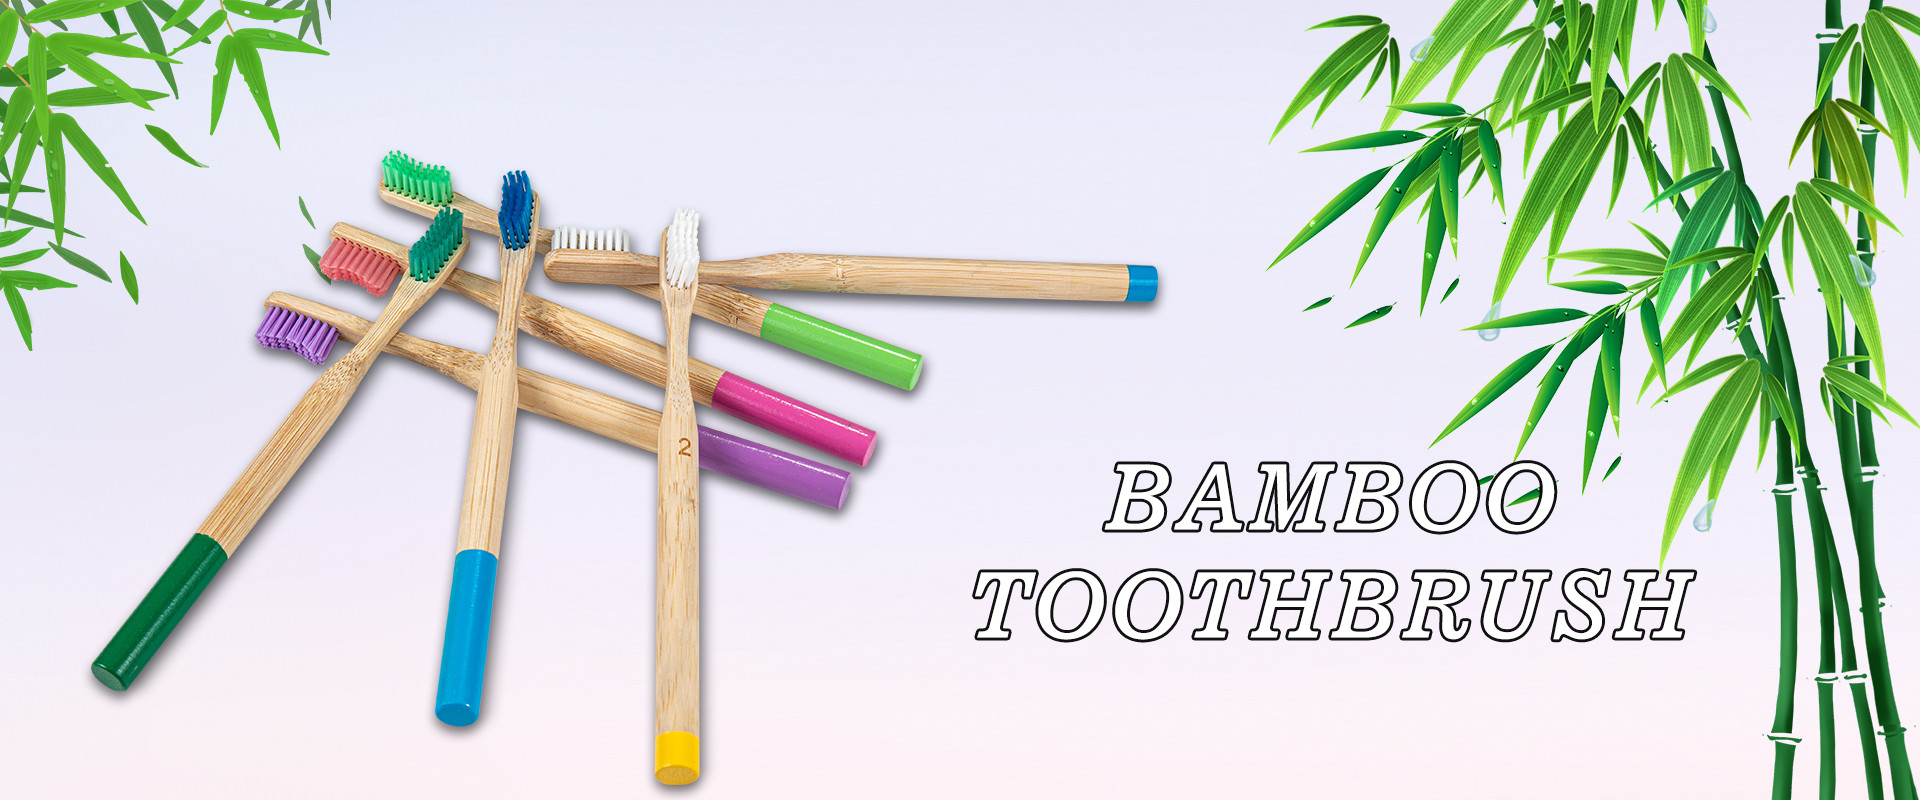 Spazzolino da denti in bambù